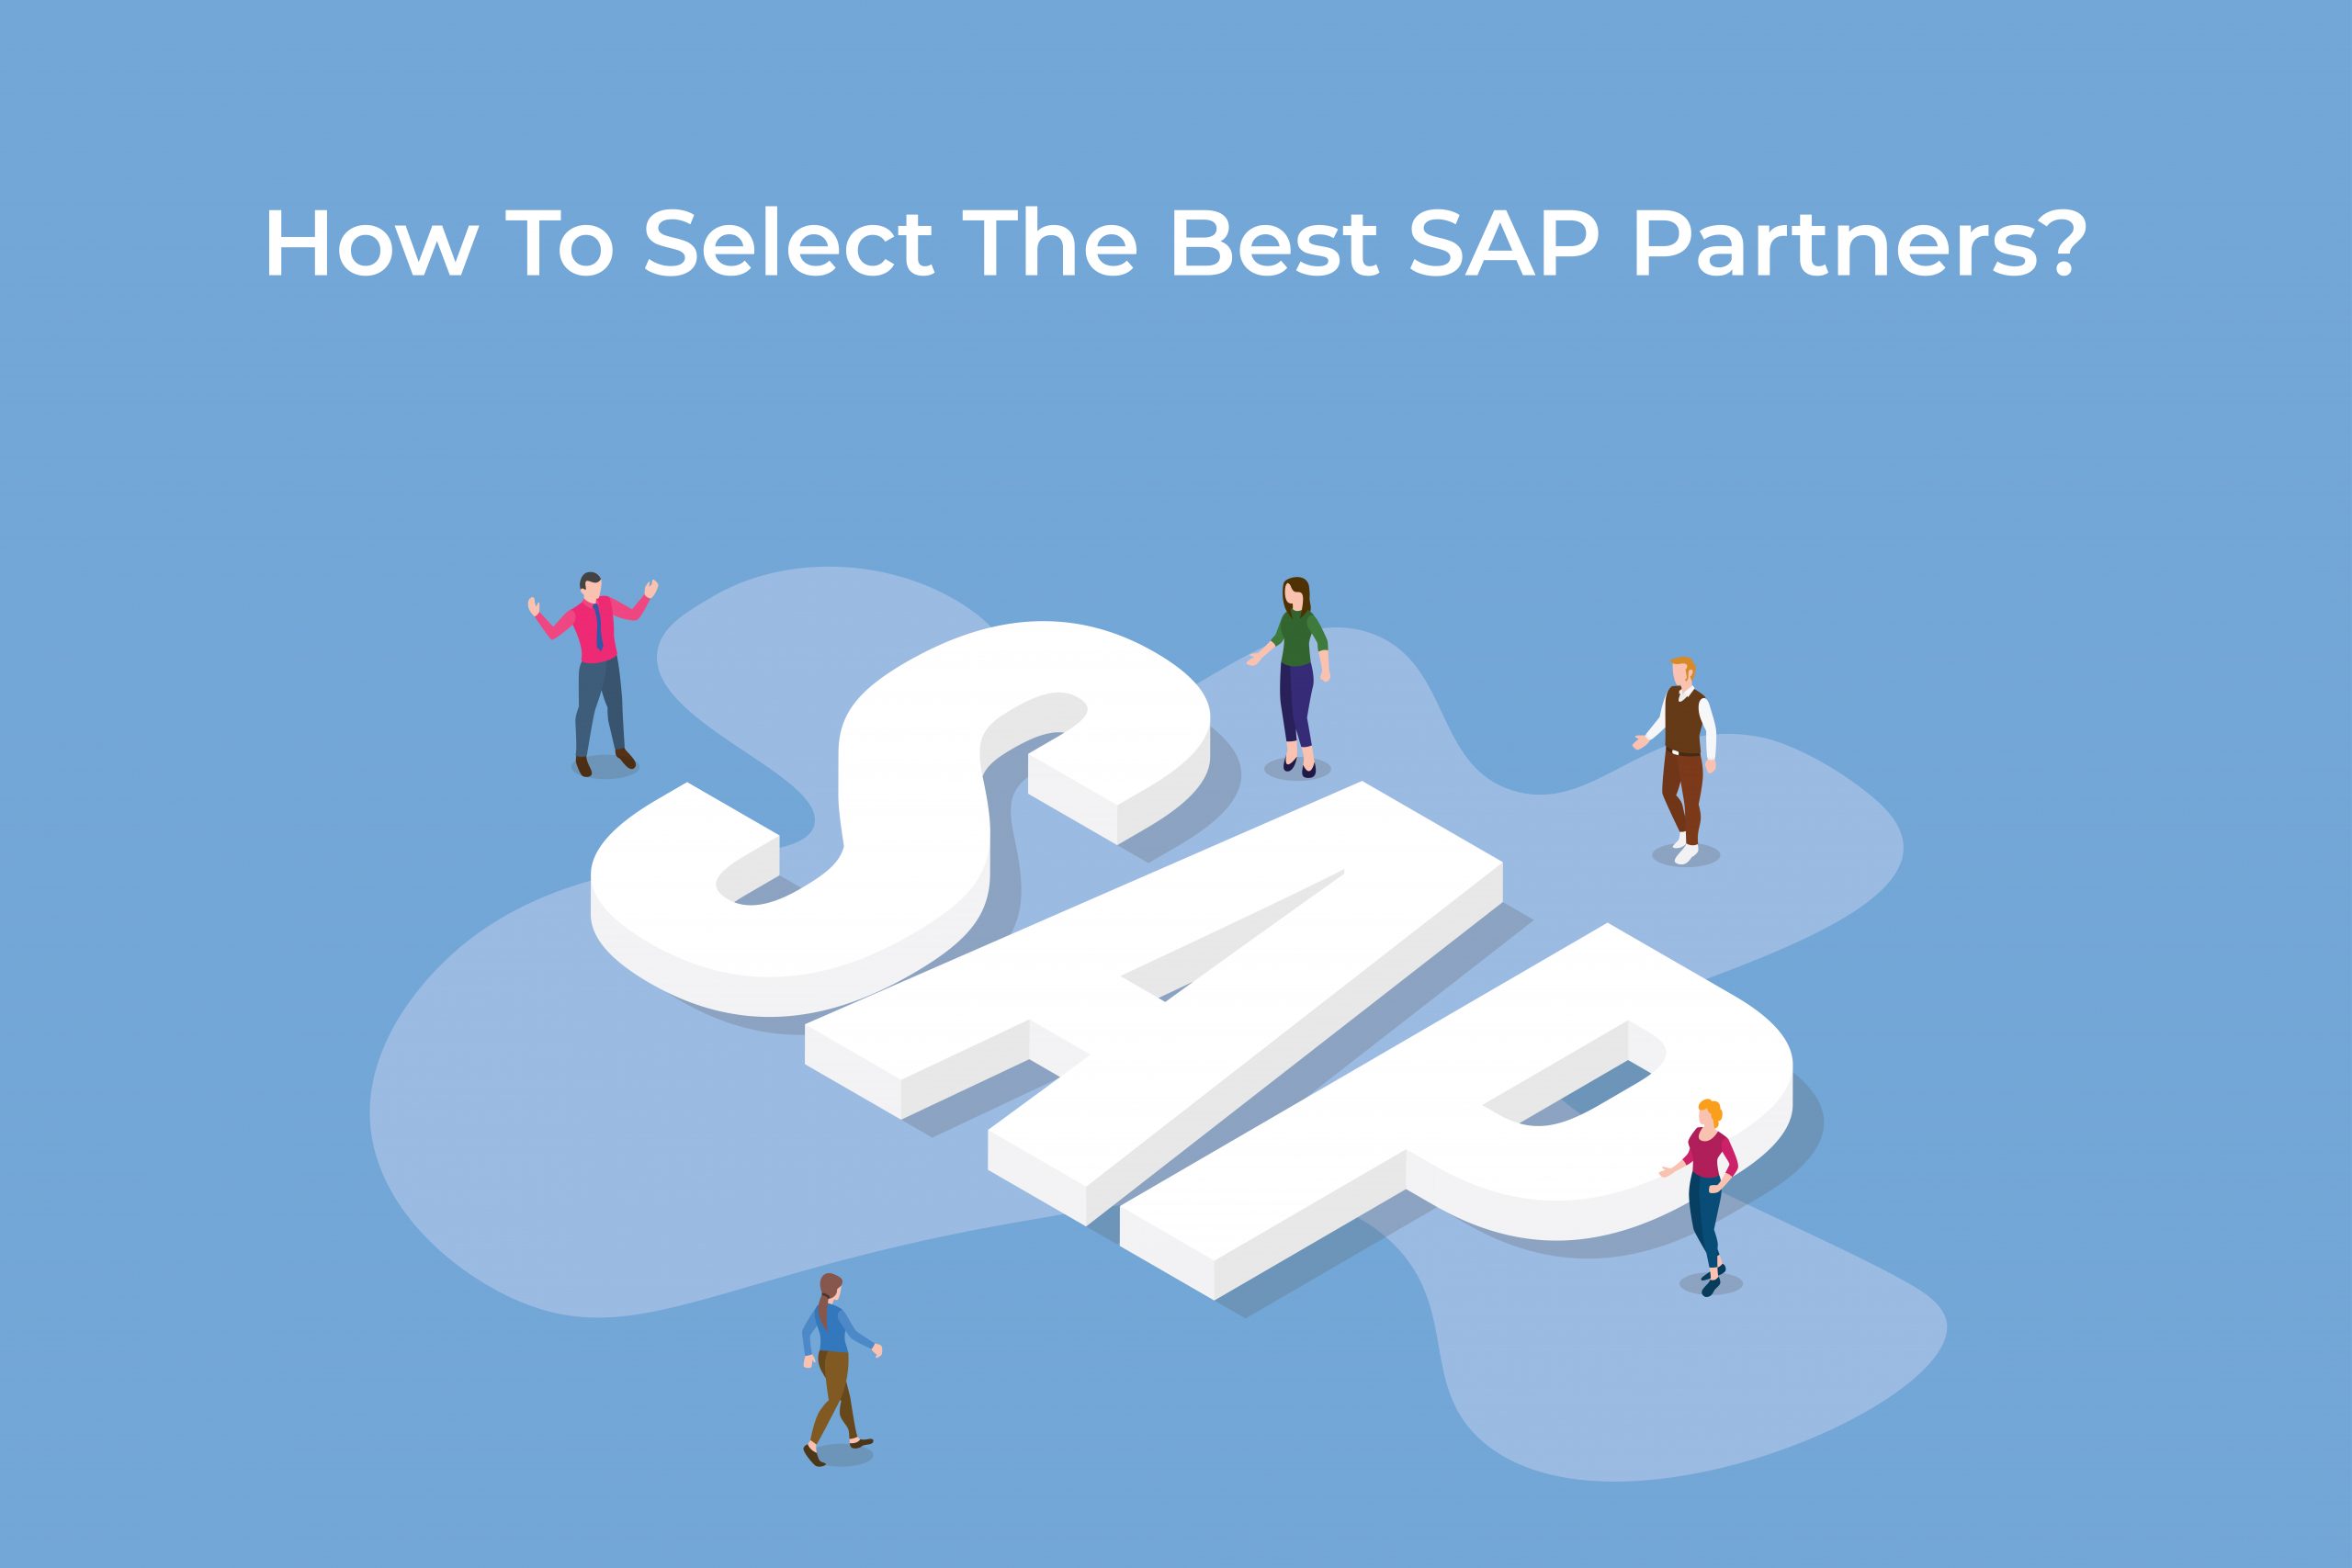 Raad eens Leidingen Uitdrukking How To Select The Best SAP Partner? - LMTEQ